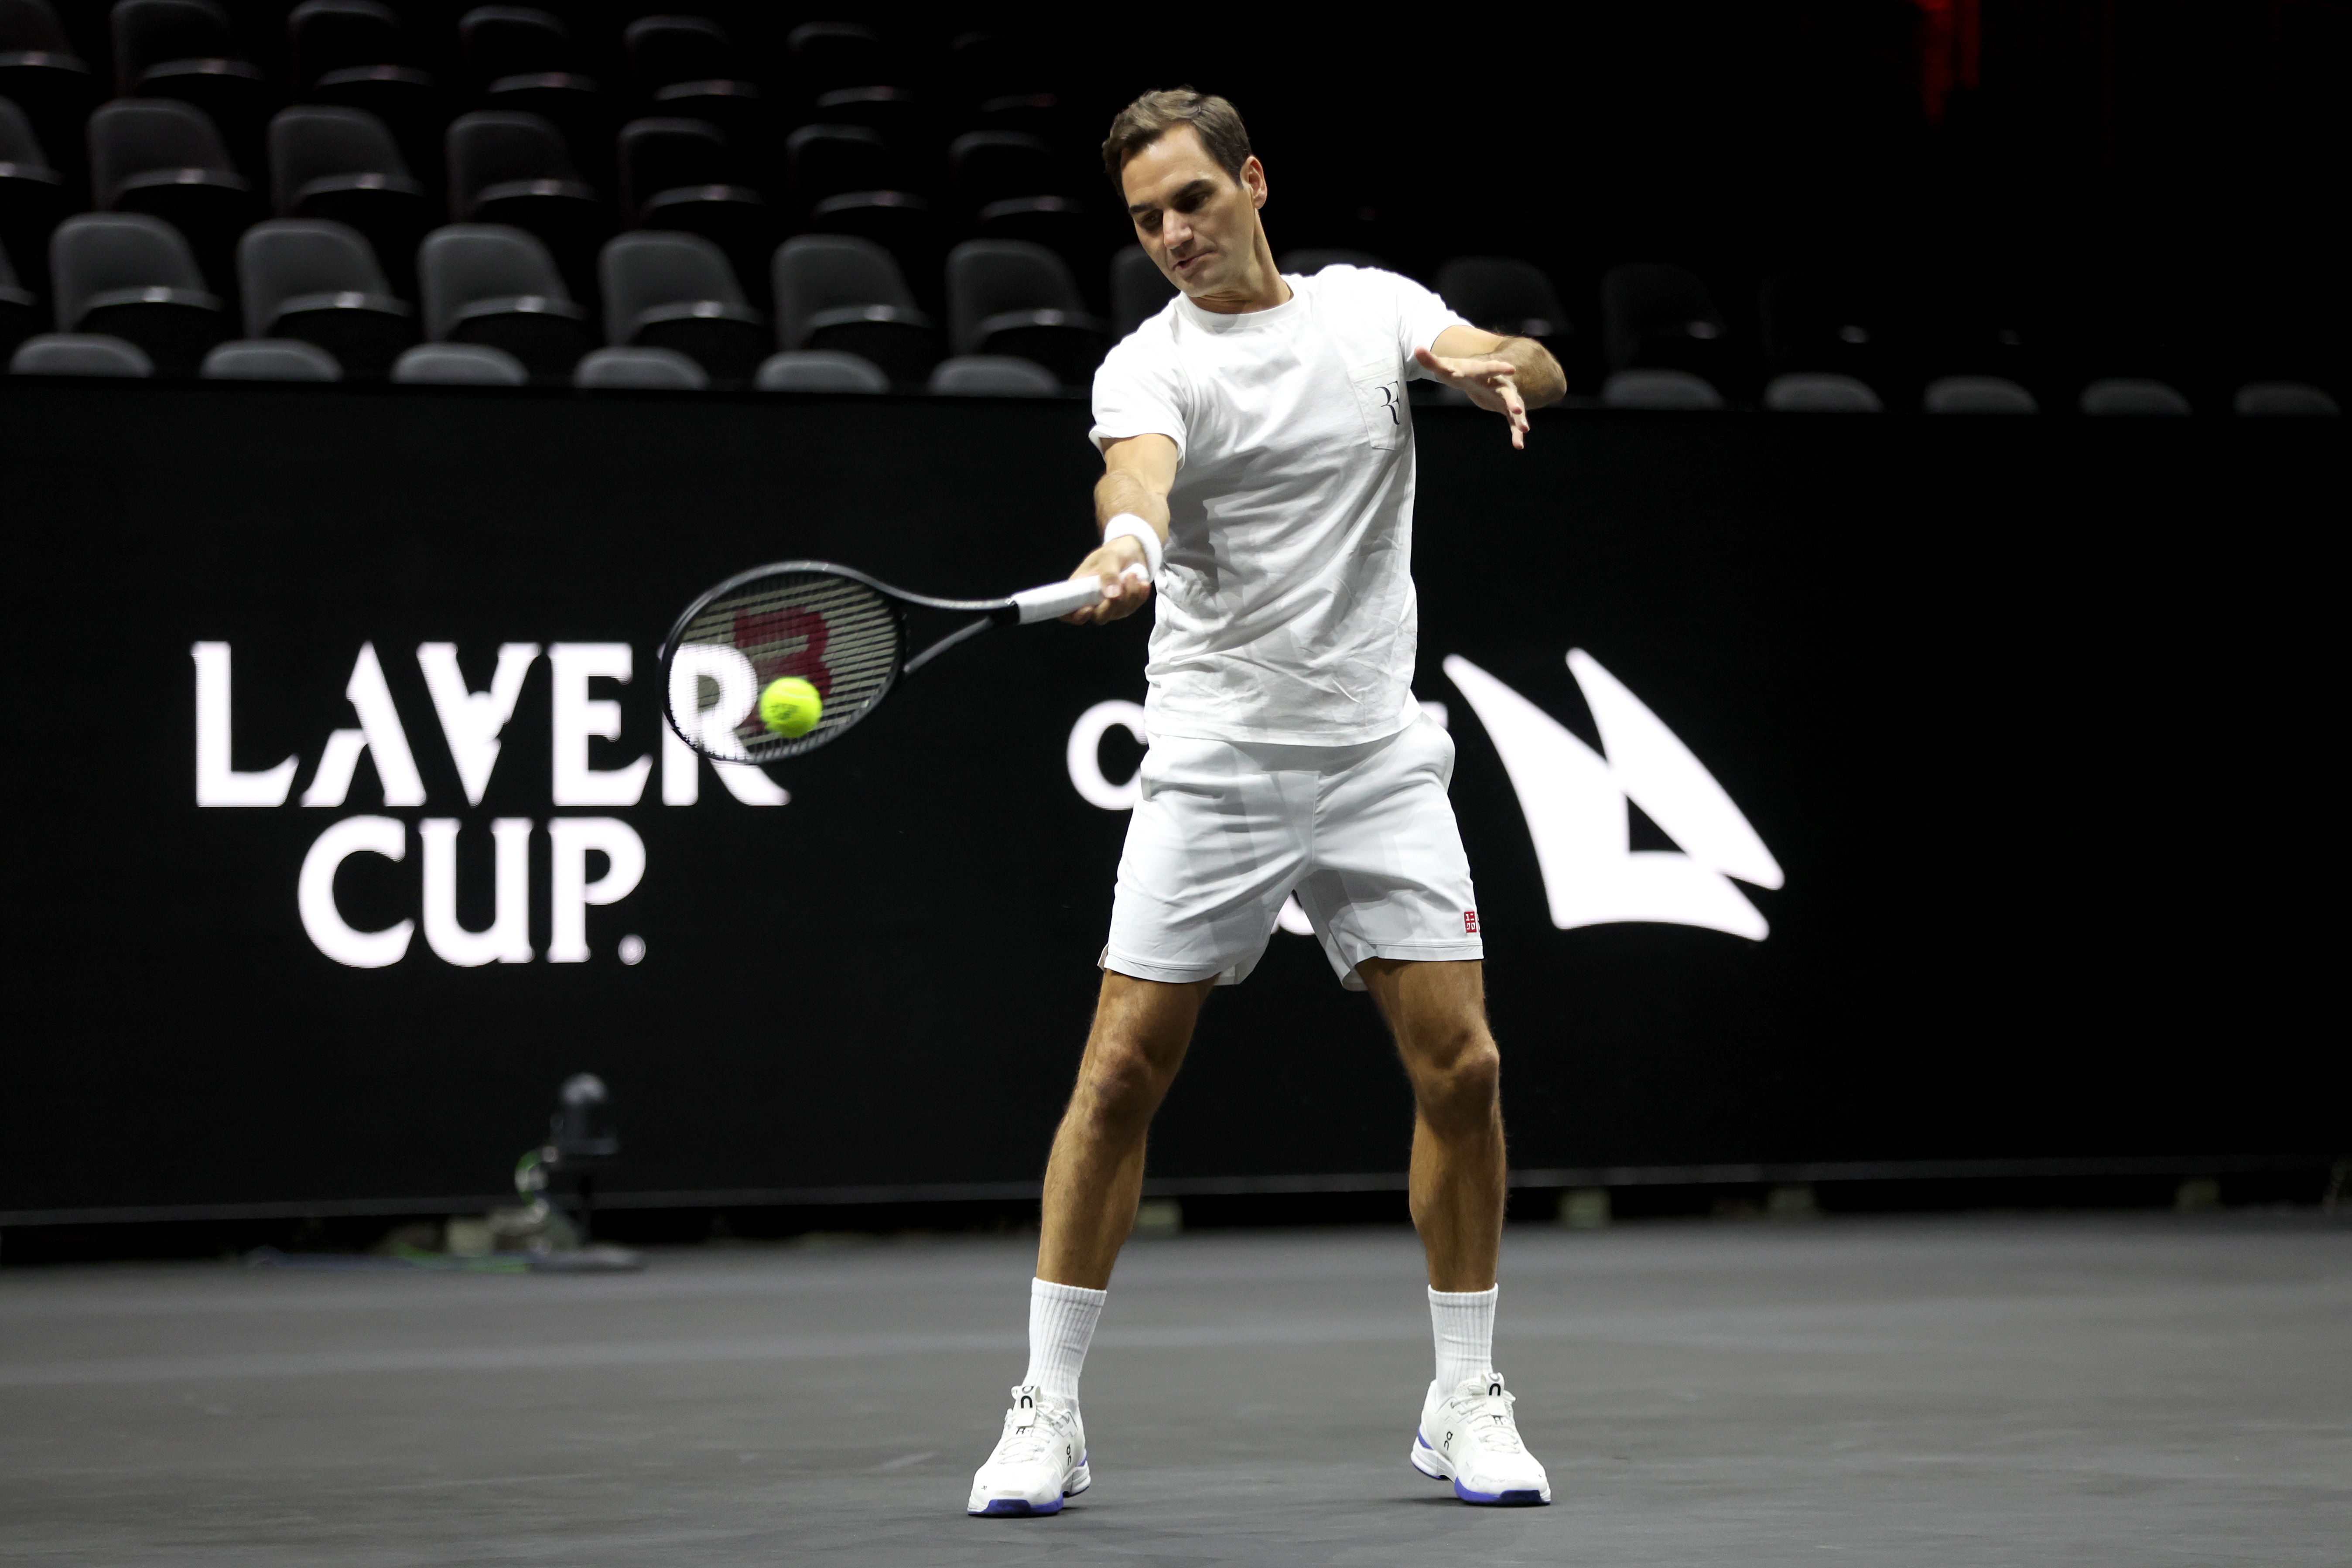 Sztárparádé! Federer a világ legjobbjai társaságában búcsúzik a tenisztől –  Nem akárki oldalán - Sportal.hu